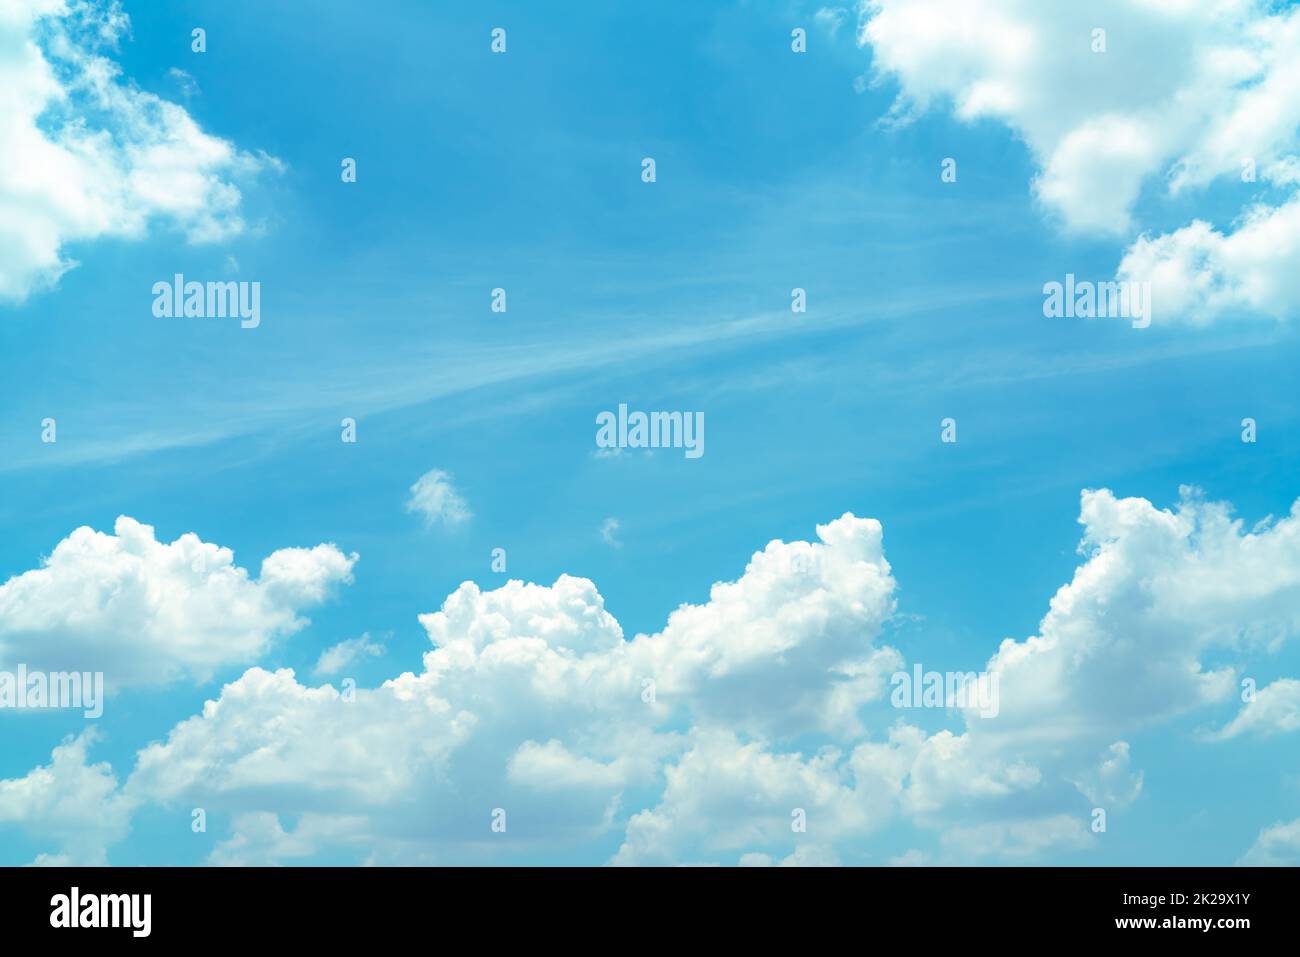 Schöner blauer Himmel und weiße Kumuluswolken abstrakter Hintergrund. Wolkenuntergrund. Blauer Himmel und flauschige weiße Wolken an sonnigen Tagen. Naturwetter. Wunderschöner blauer Himmel für einen glücklichen Tag im Hintergrund. Stockfoto